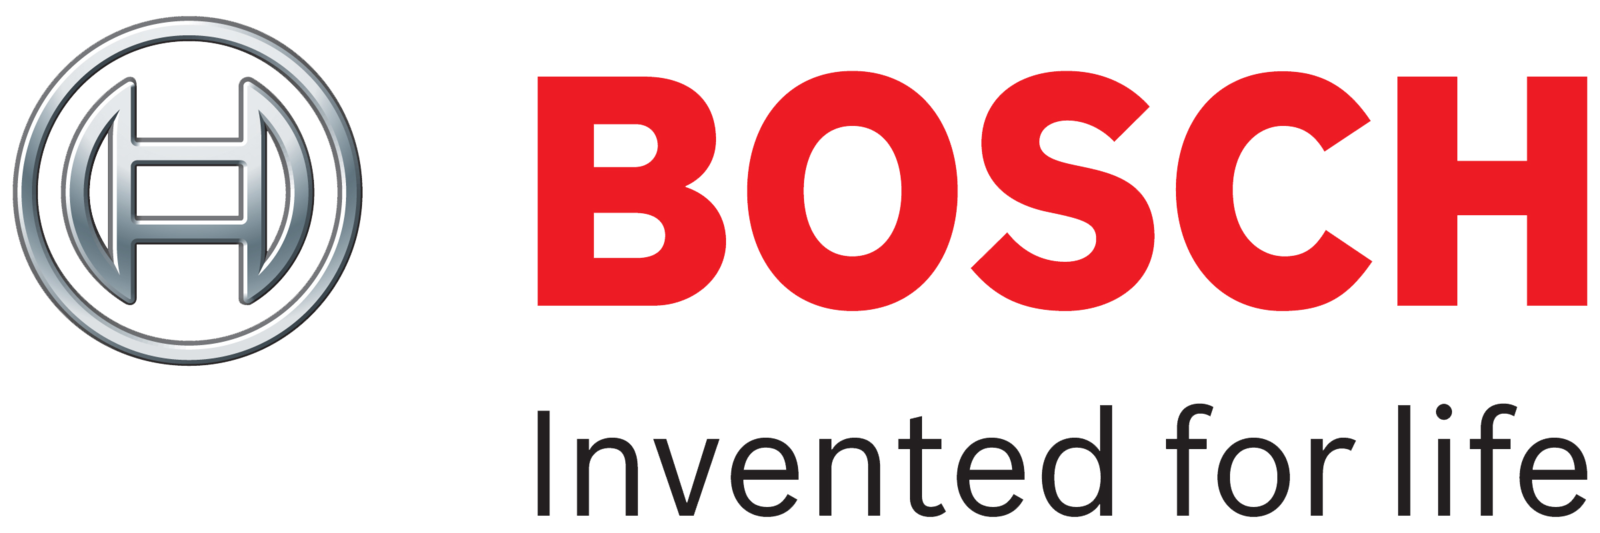 Bosch-logo-9